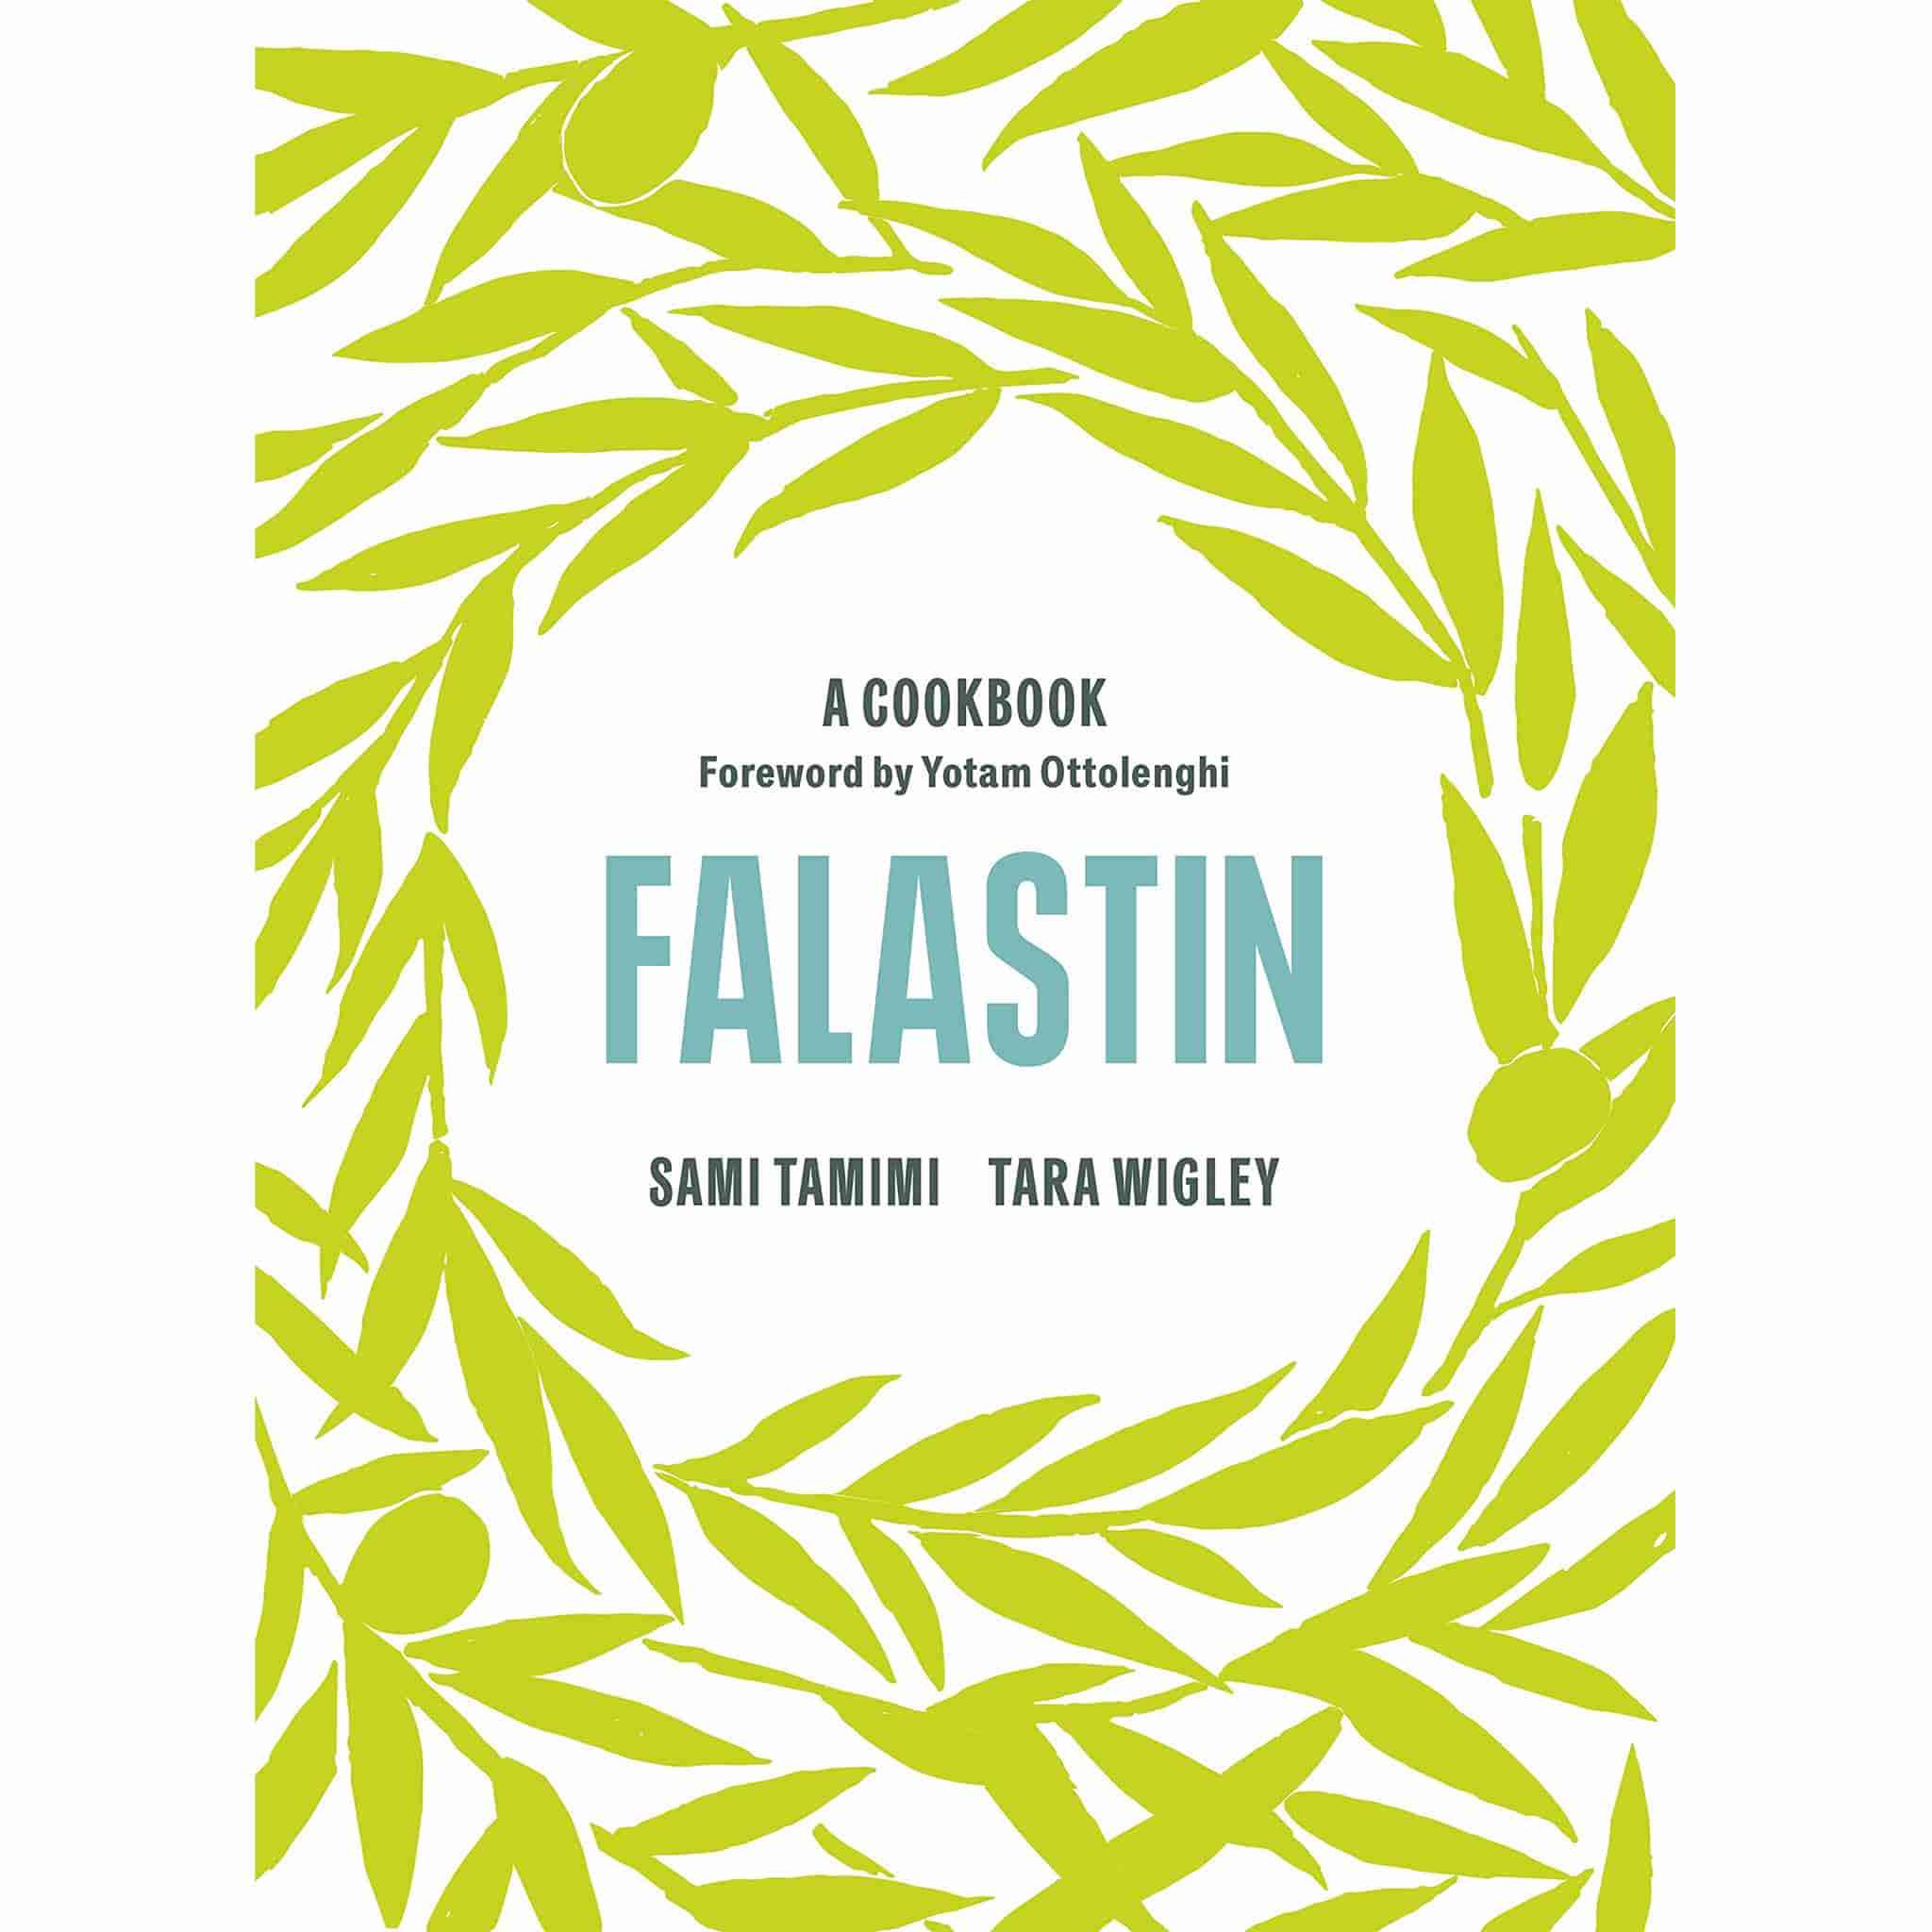 Falastin: a Cookbook by Sami Tamimi & Tara Wigley